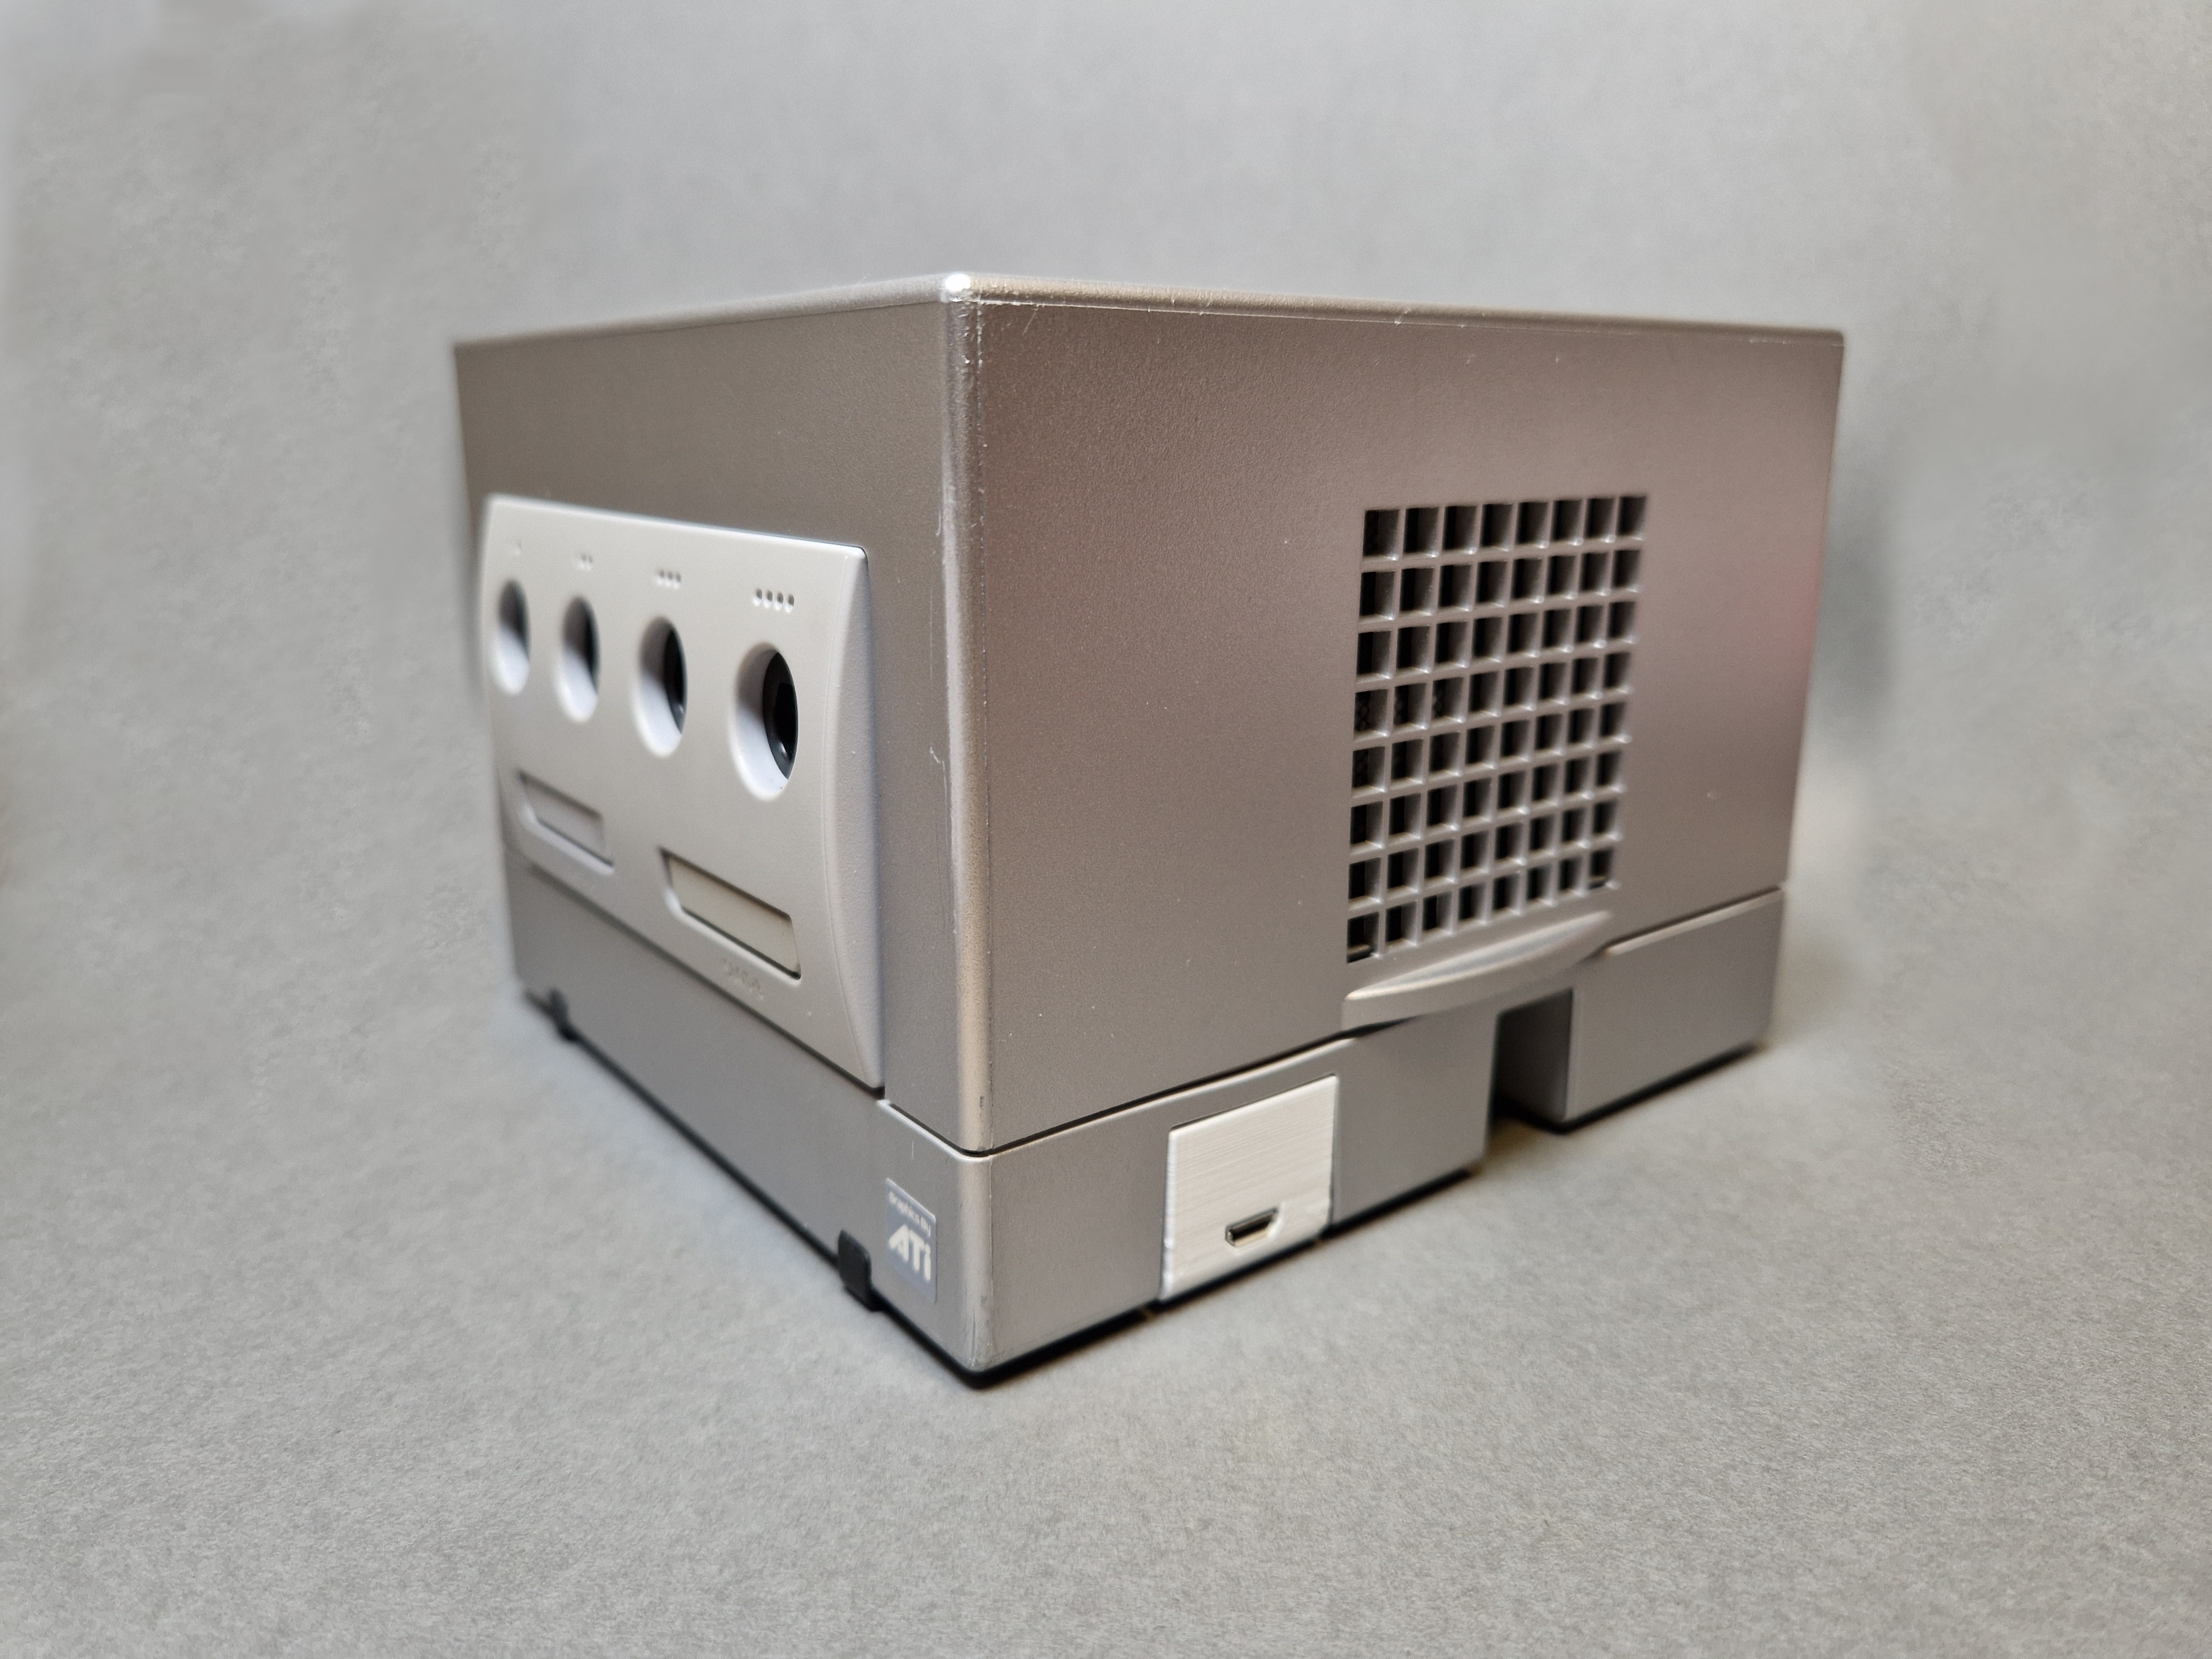 Gamecube serial port picoboot mount